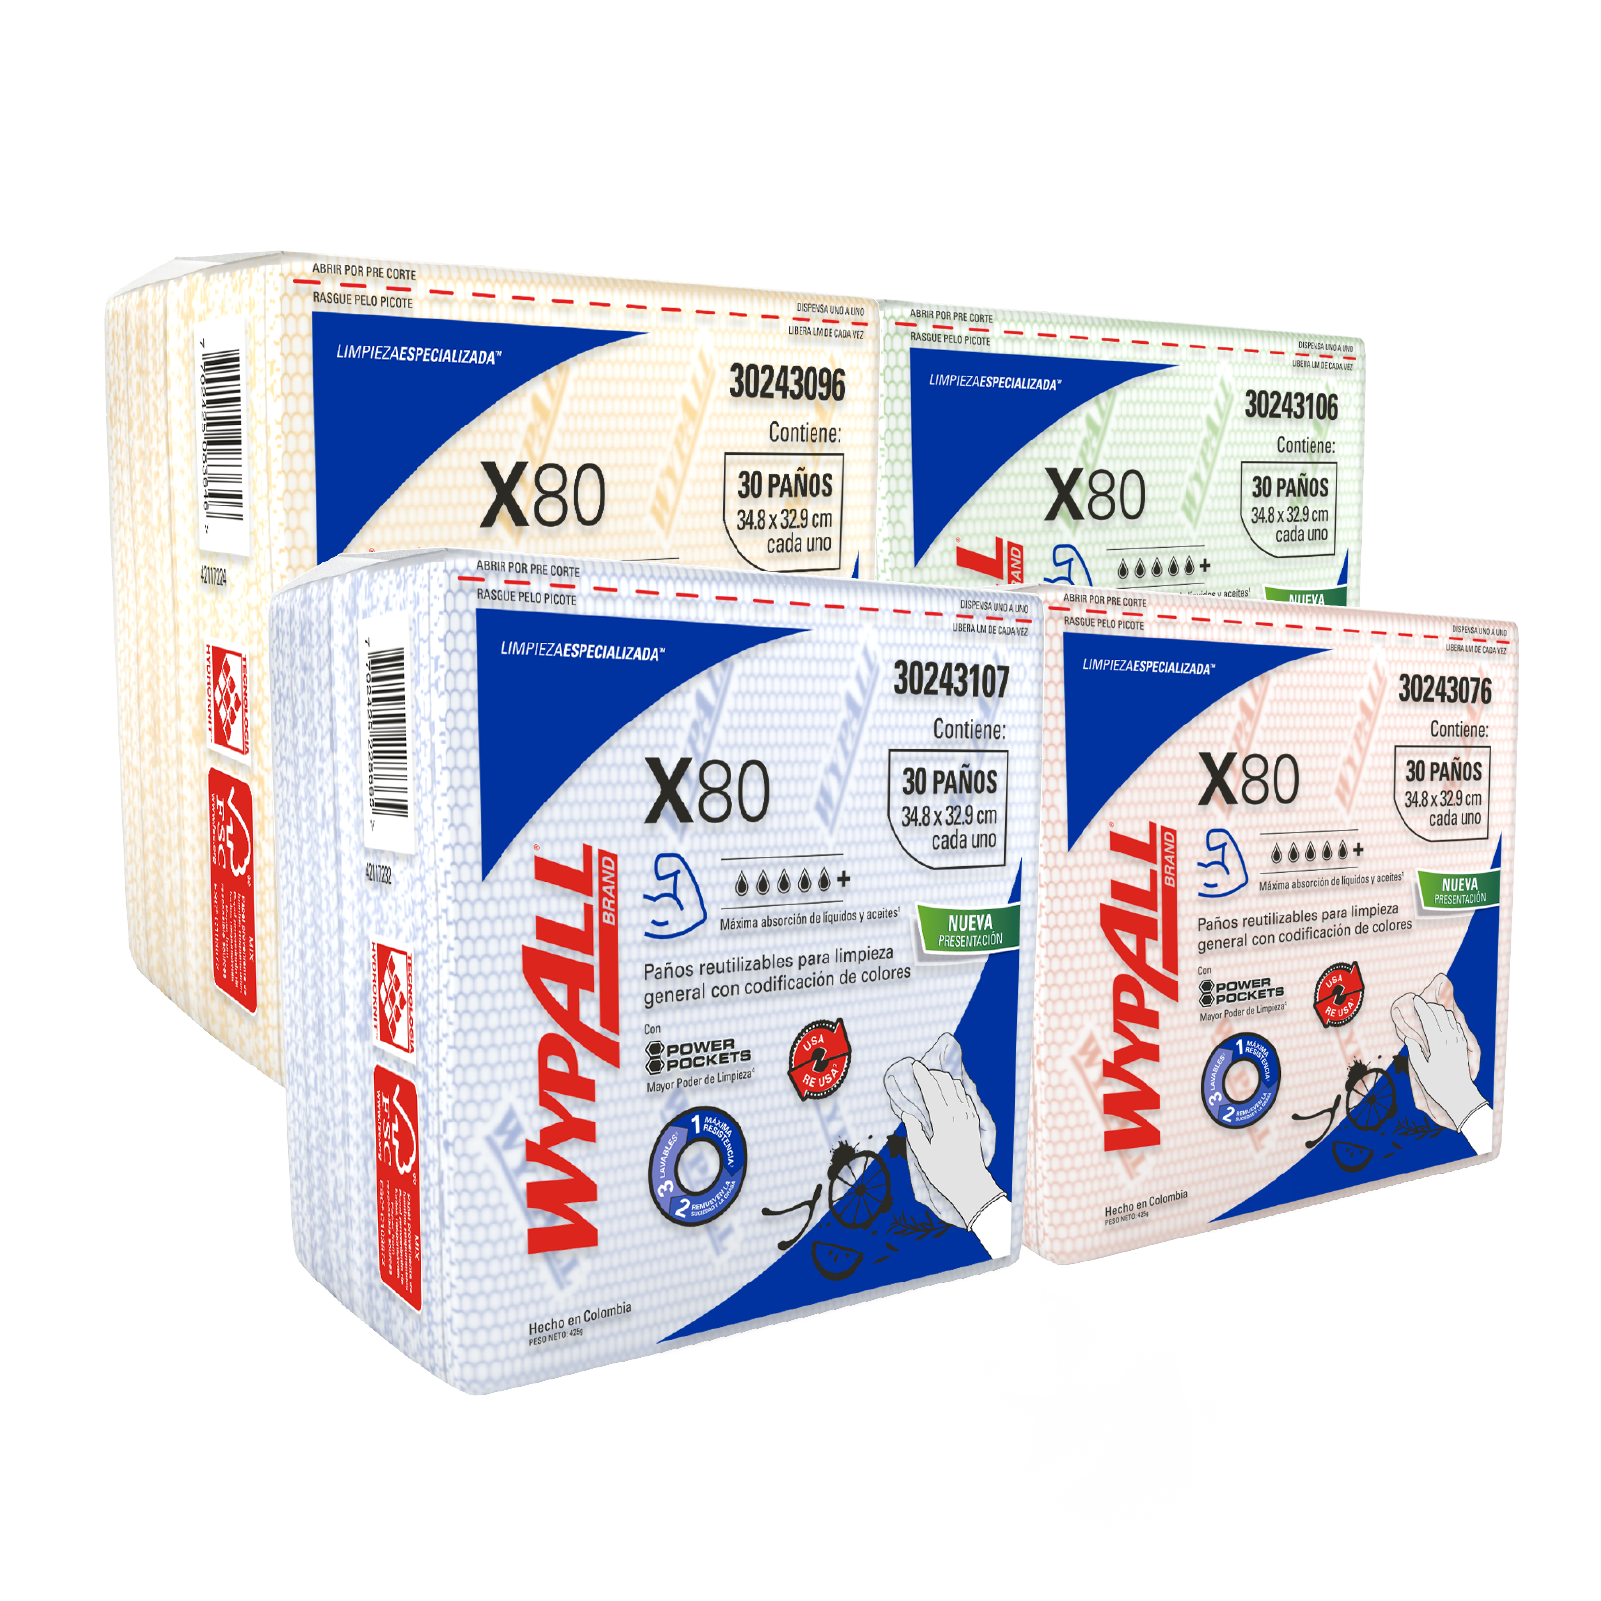 WypAll® X80 - Paños de limpieza. Color rojo, doblados, con Power Pockets, 30 paños, 10 paquetes/caja, 300 paños/caja, 30243076 - S061511550